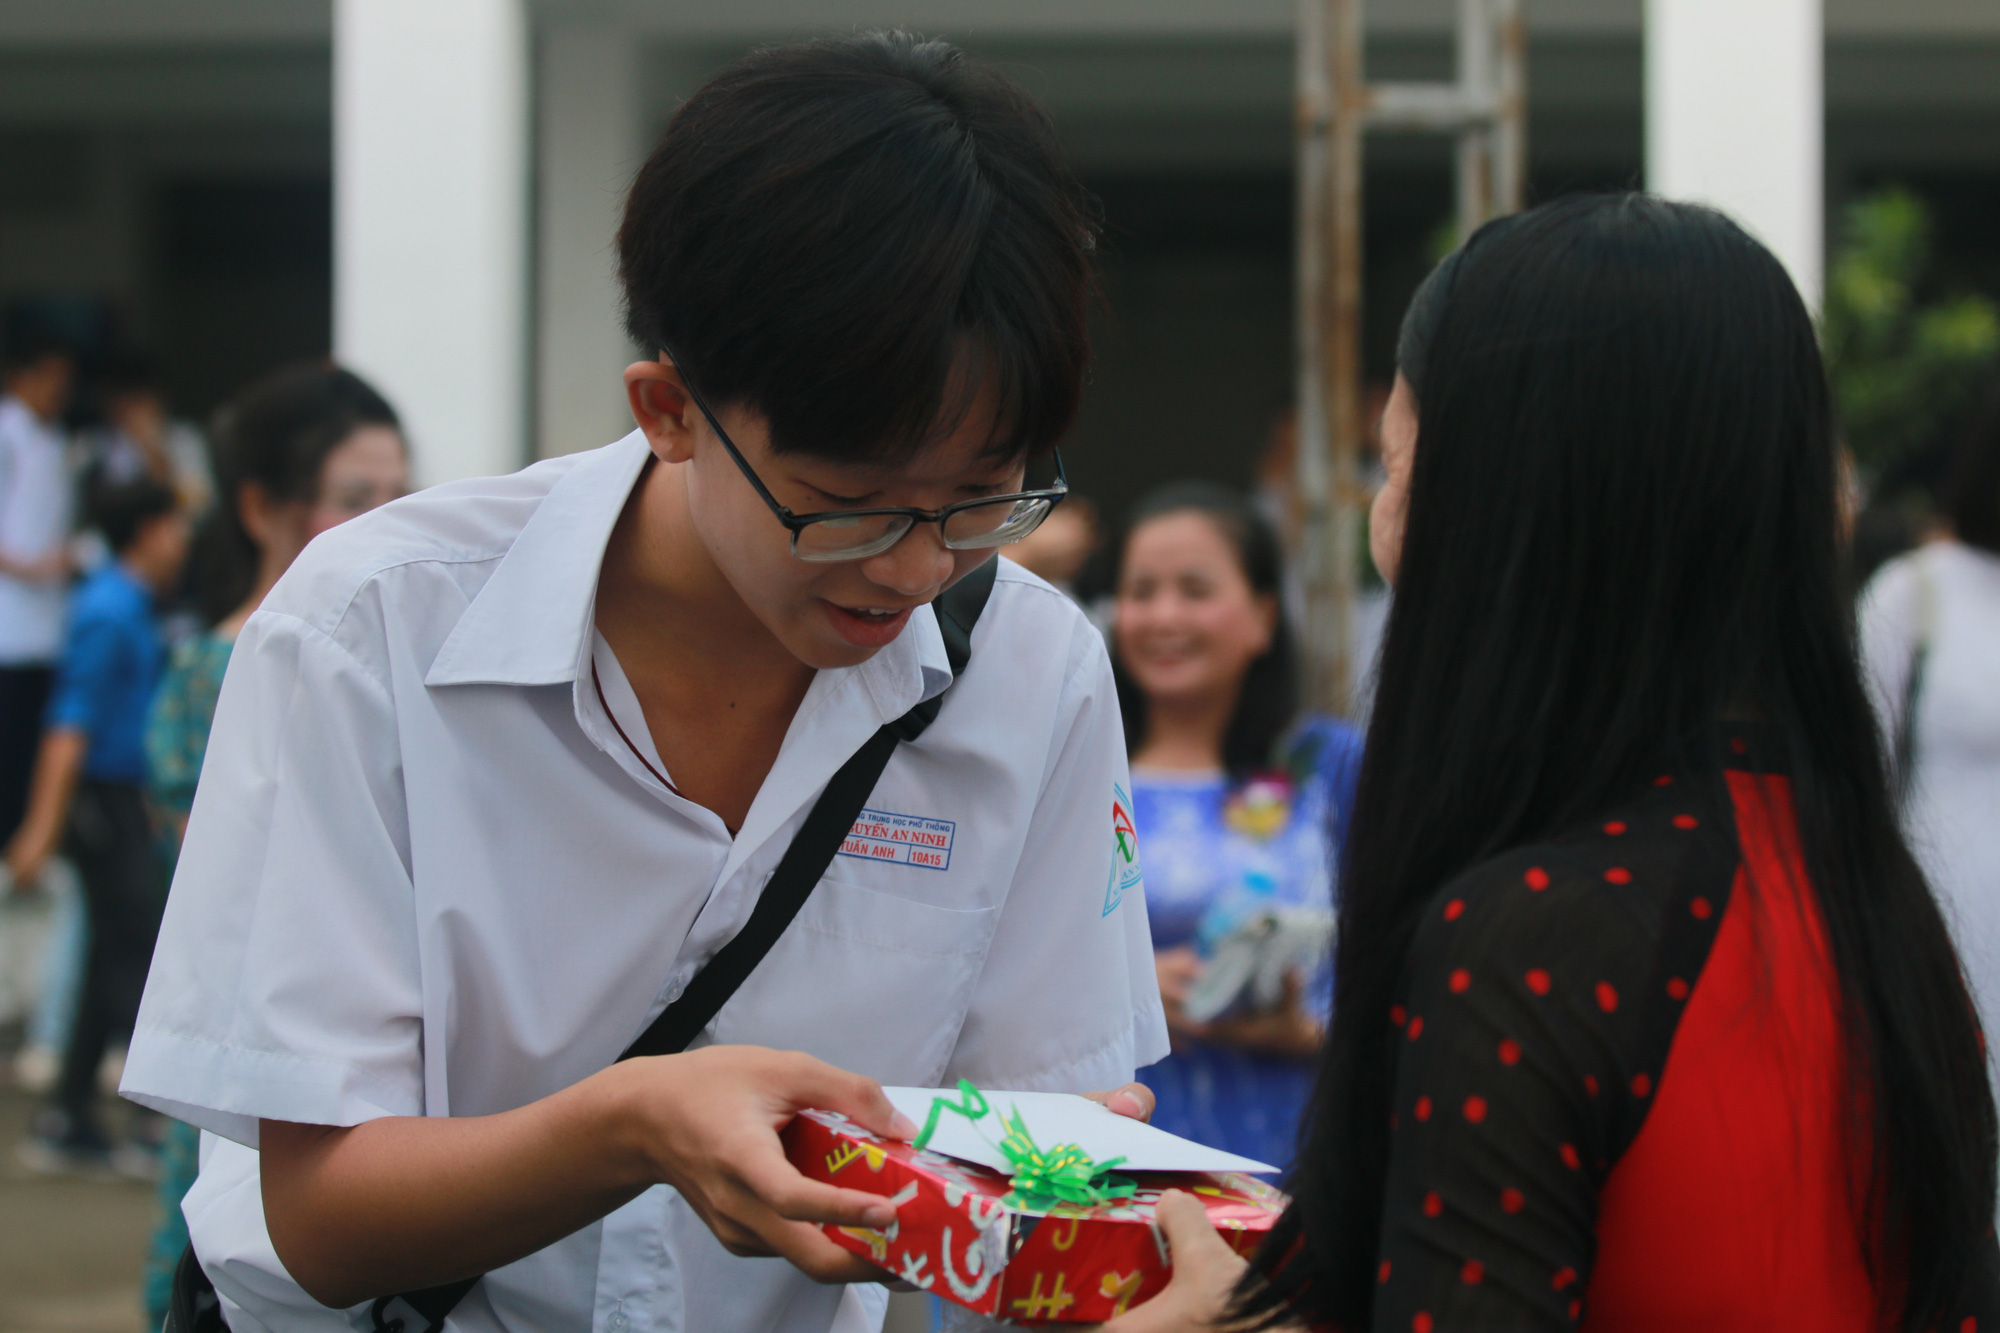 Ngày Nhà giáo Việt Nam: Hãy cùng chúc mừng Ngày Nhà giáo Việt Nam đến với những người công tác trong ngành giáo dục. Để tôn vinh và trân trọng công lao của các giáo viên, hãy cùng xem những bức ảnh đầy cảm xúc về Ngày Nhà giáo Việt Nam.